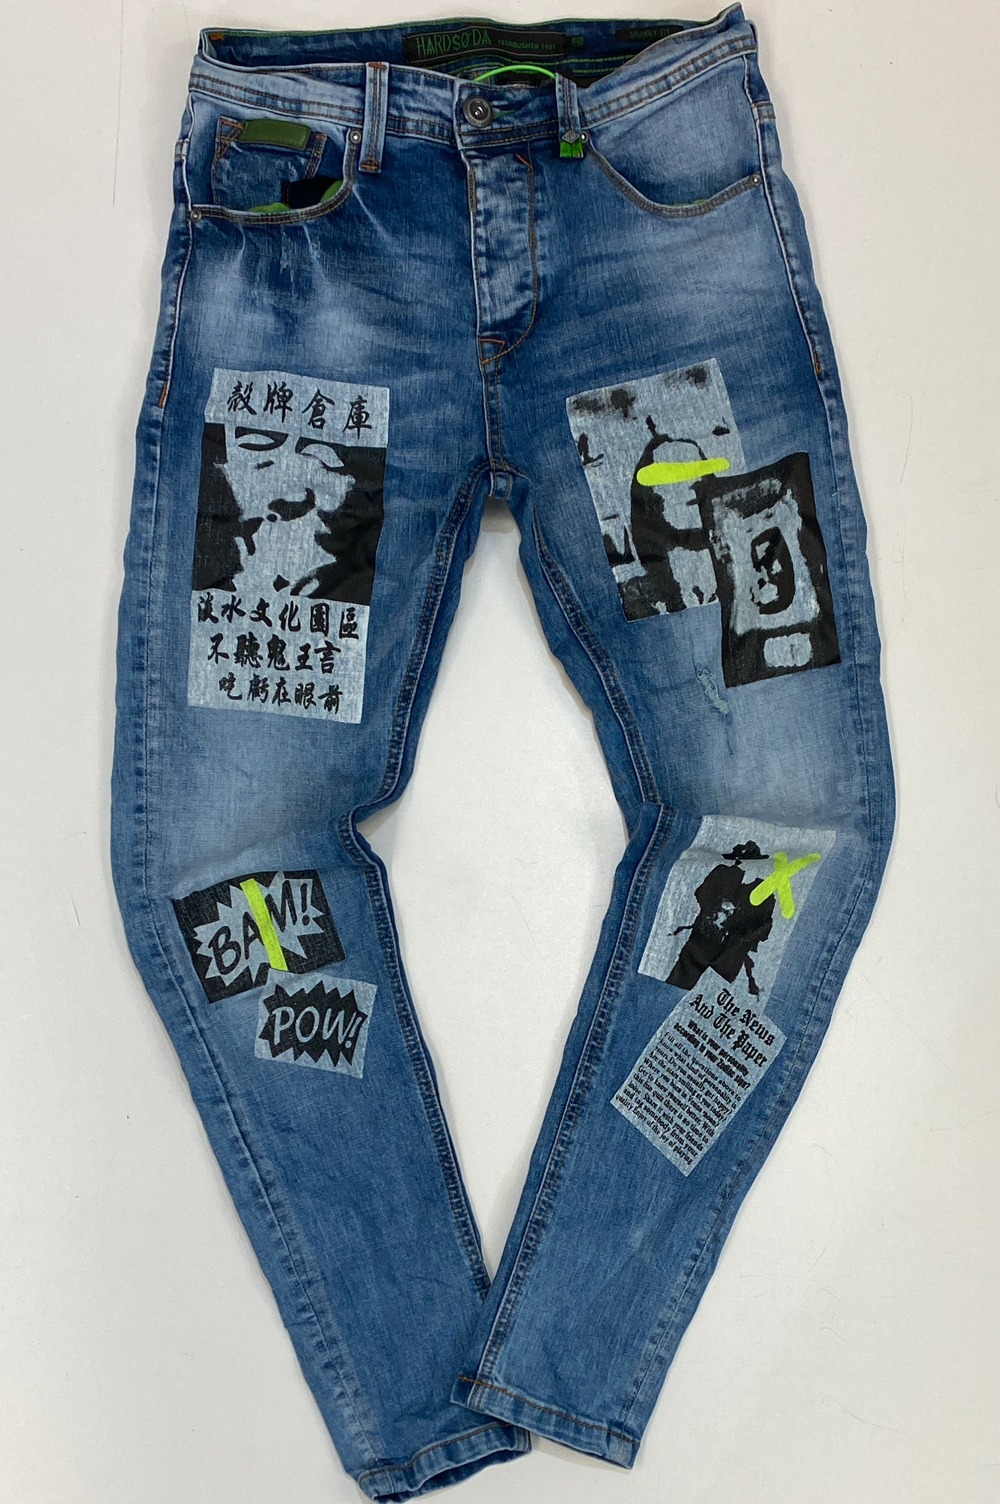 Hard Soda- original denim jeans w/ pictures & sayings